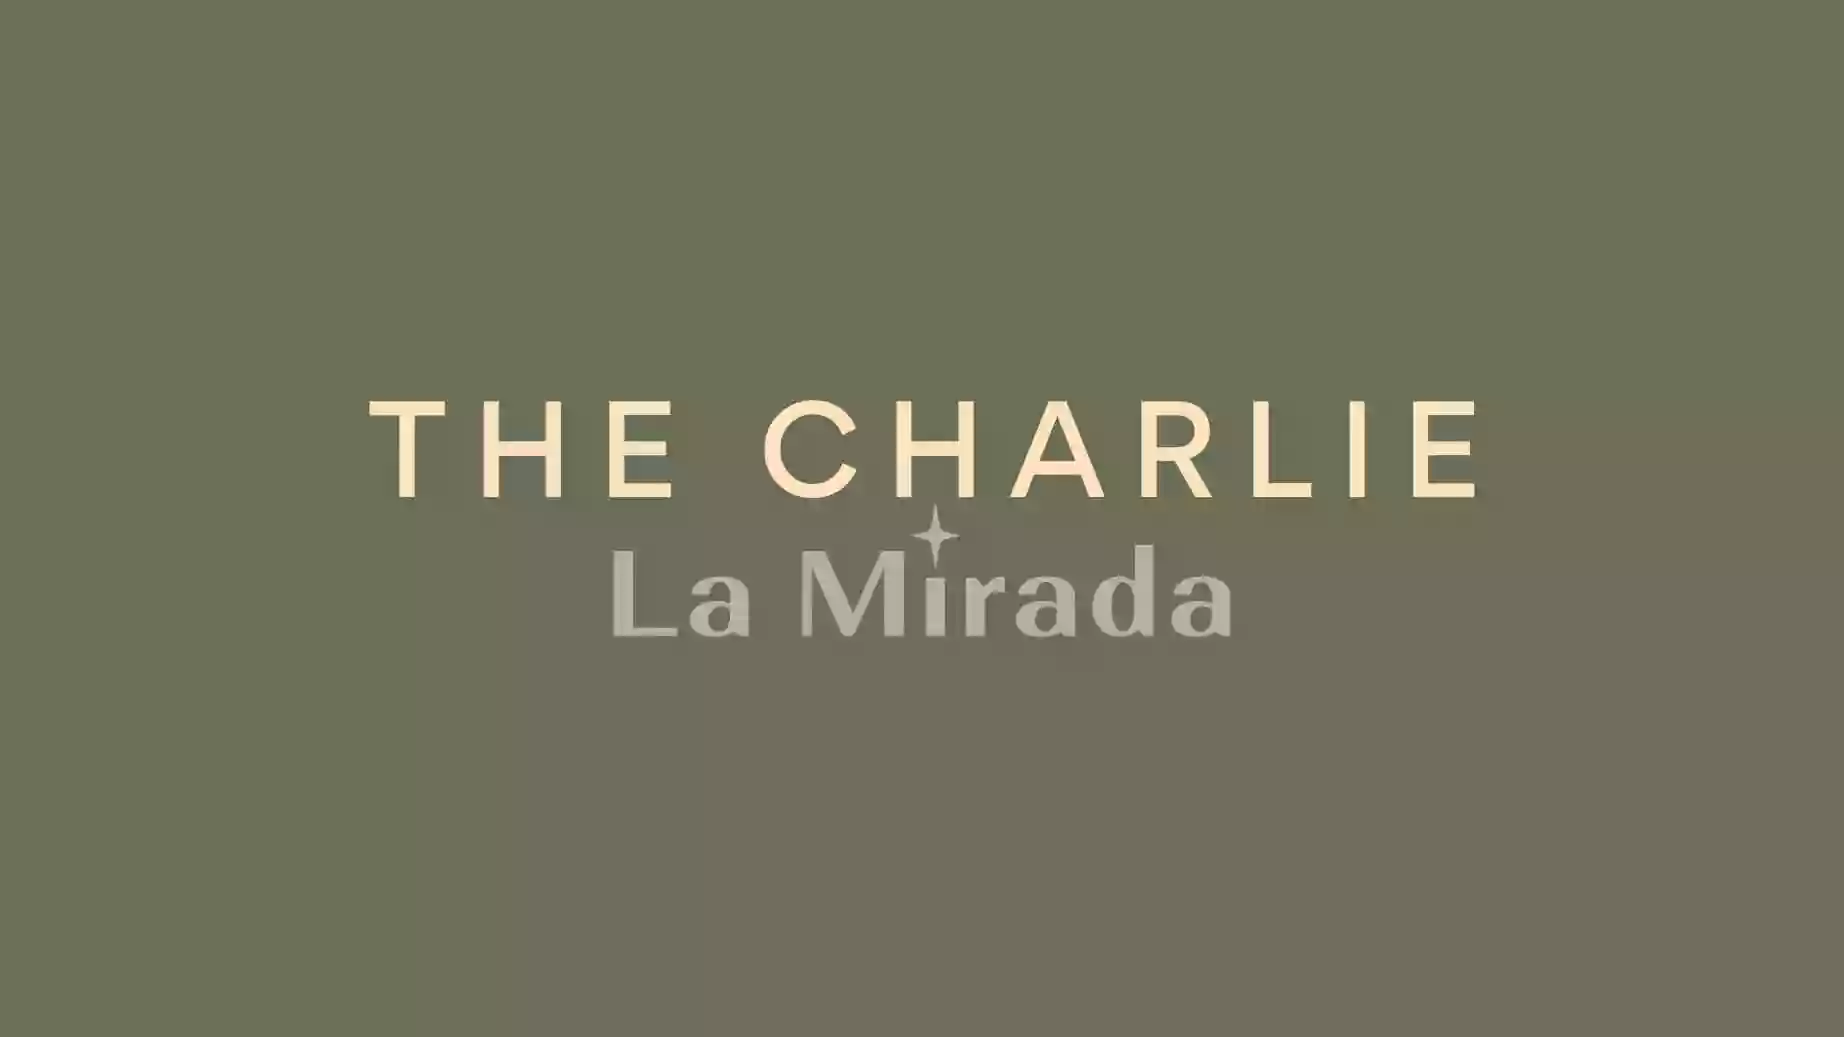 The Charlie La Mirada